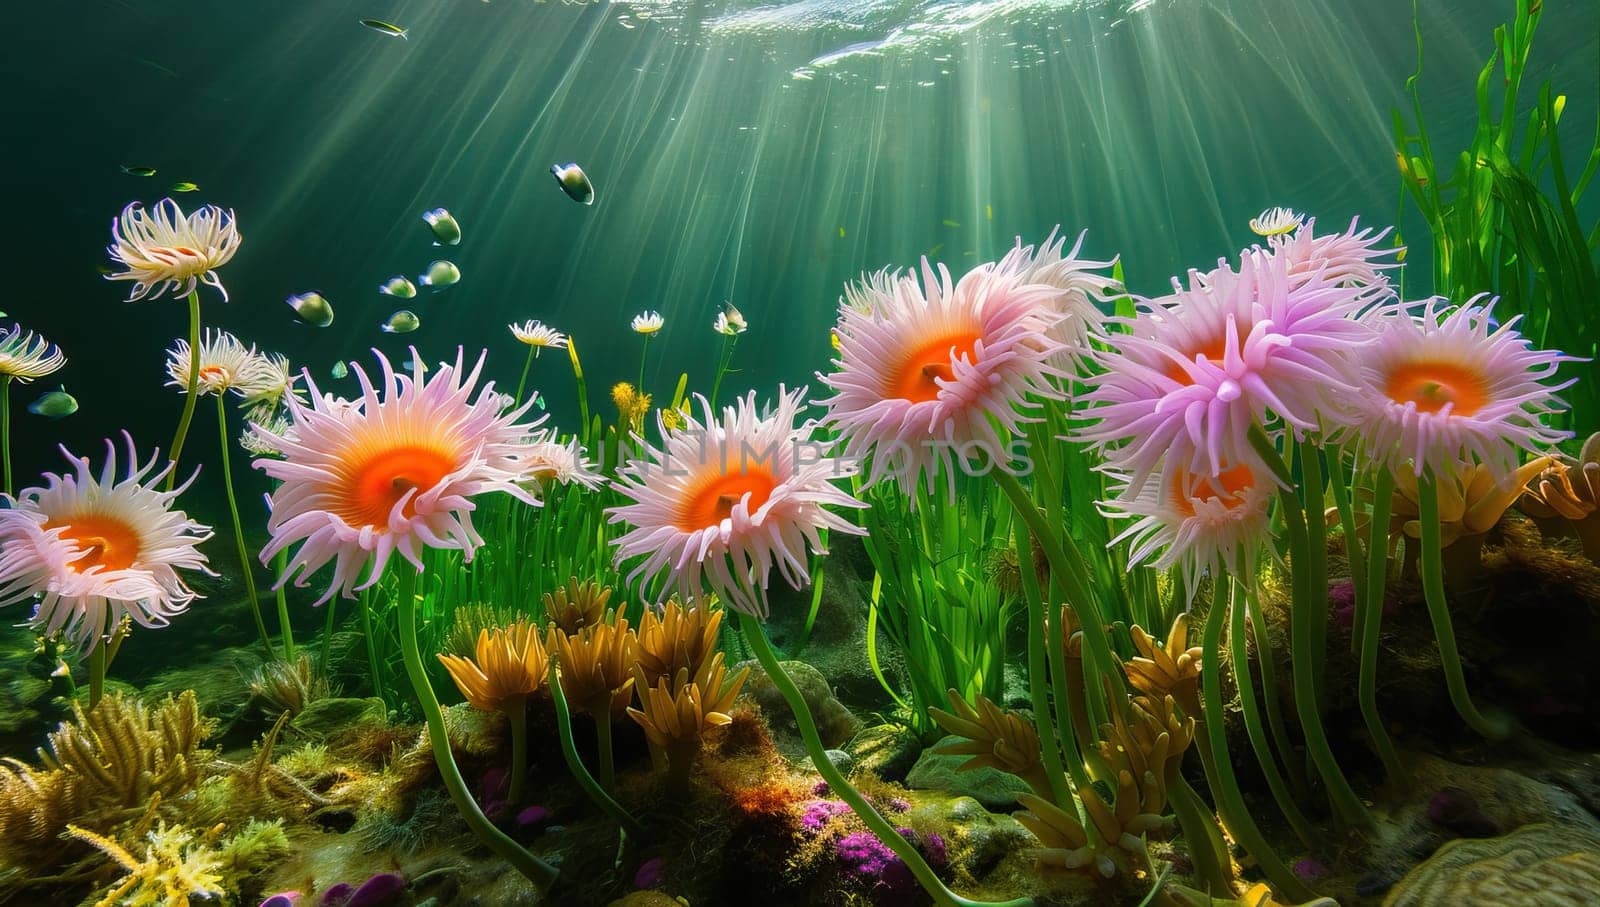 Underwater Garden of Vibrant Sea Anemones